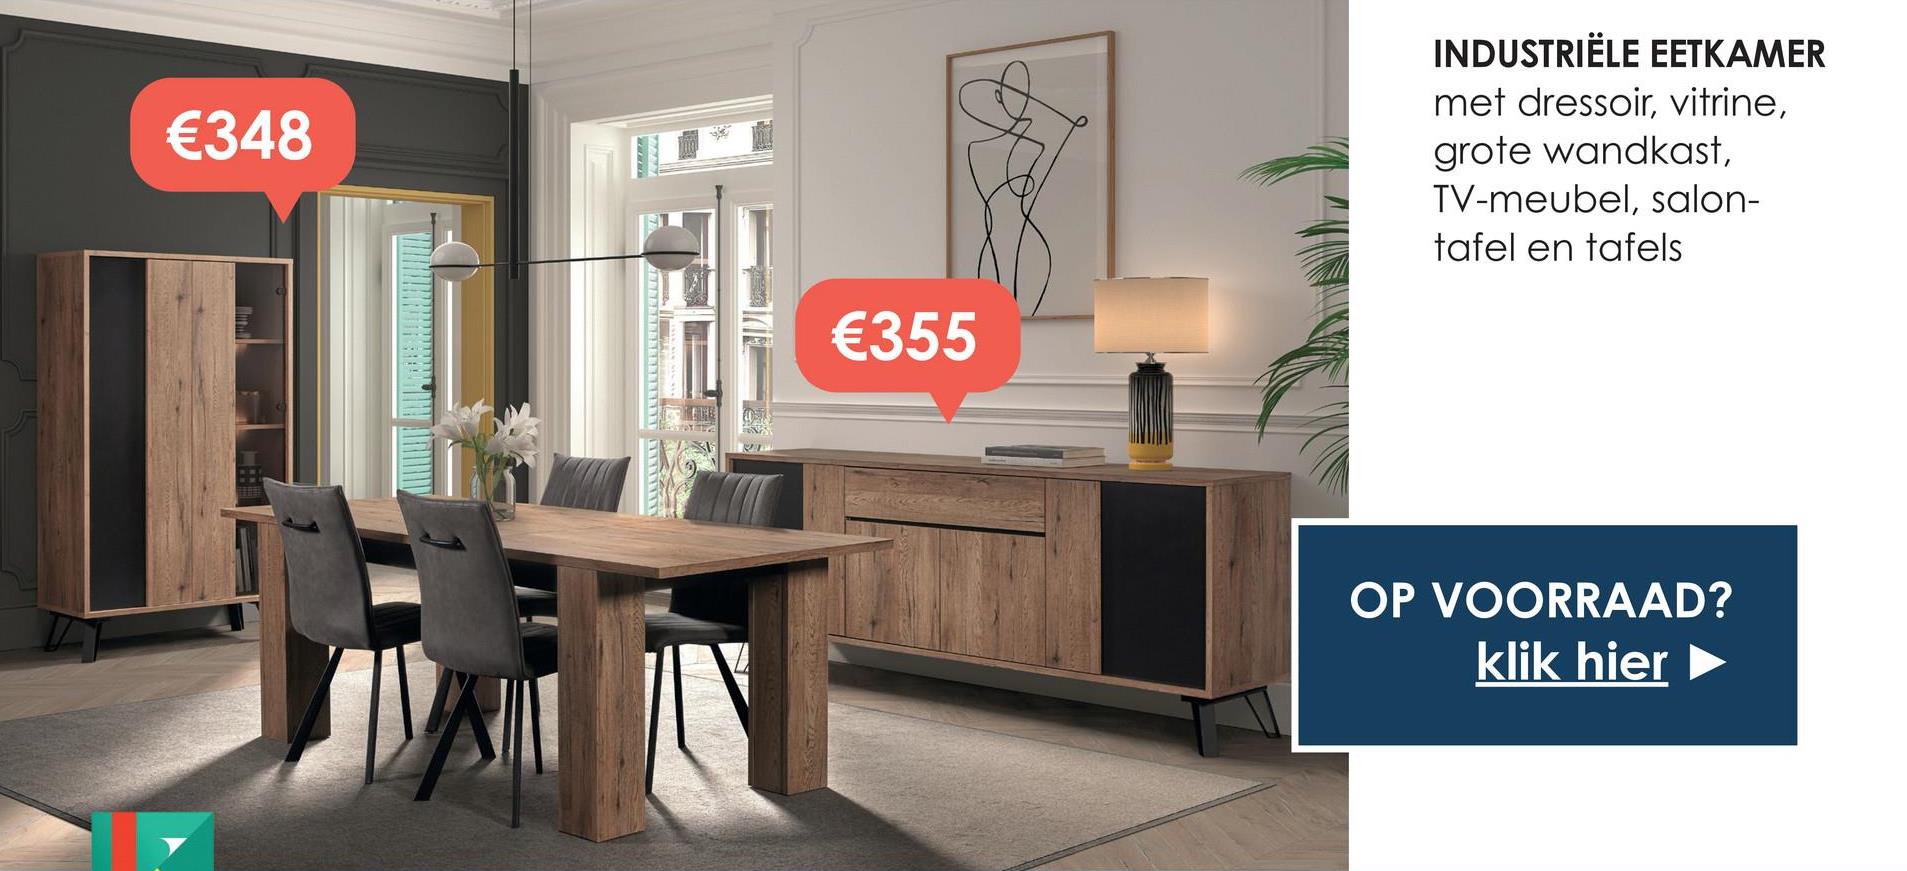 €348
€355
INDUSTRIËLE EETKAMER
met dressoir, vitrine,
grote wandkast,
TV-meubel, salon-
tafel en tafels
OP VOORRAAD?
klik hier